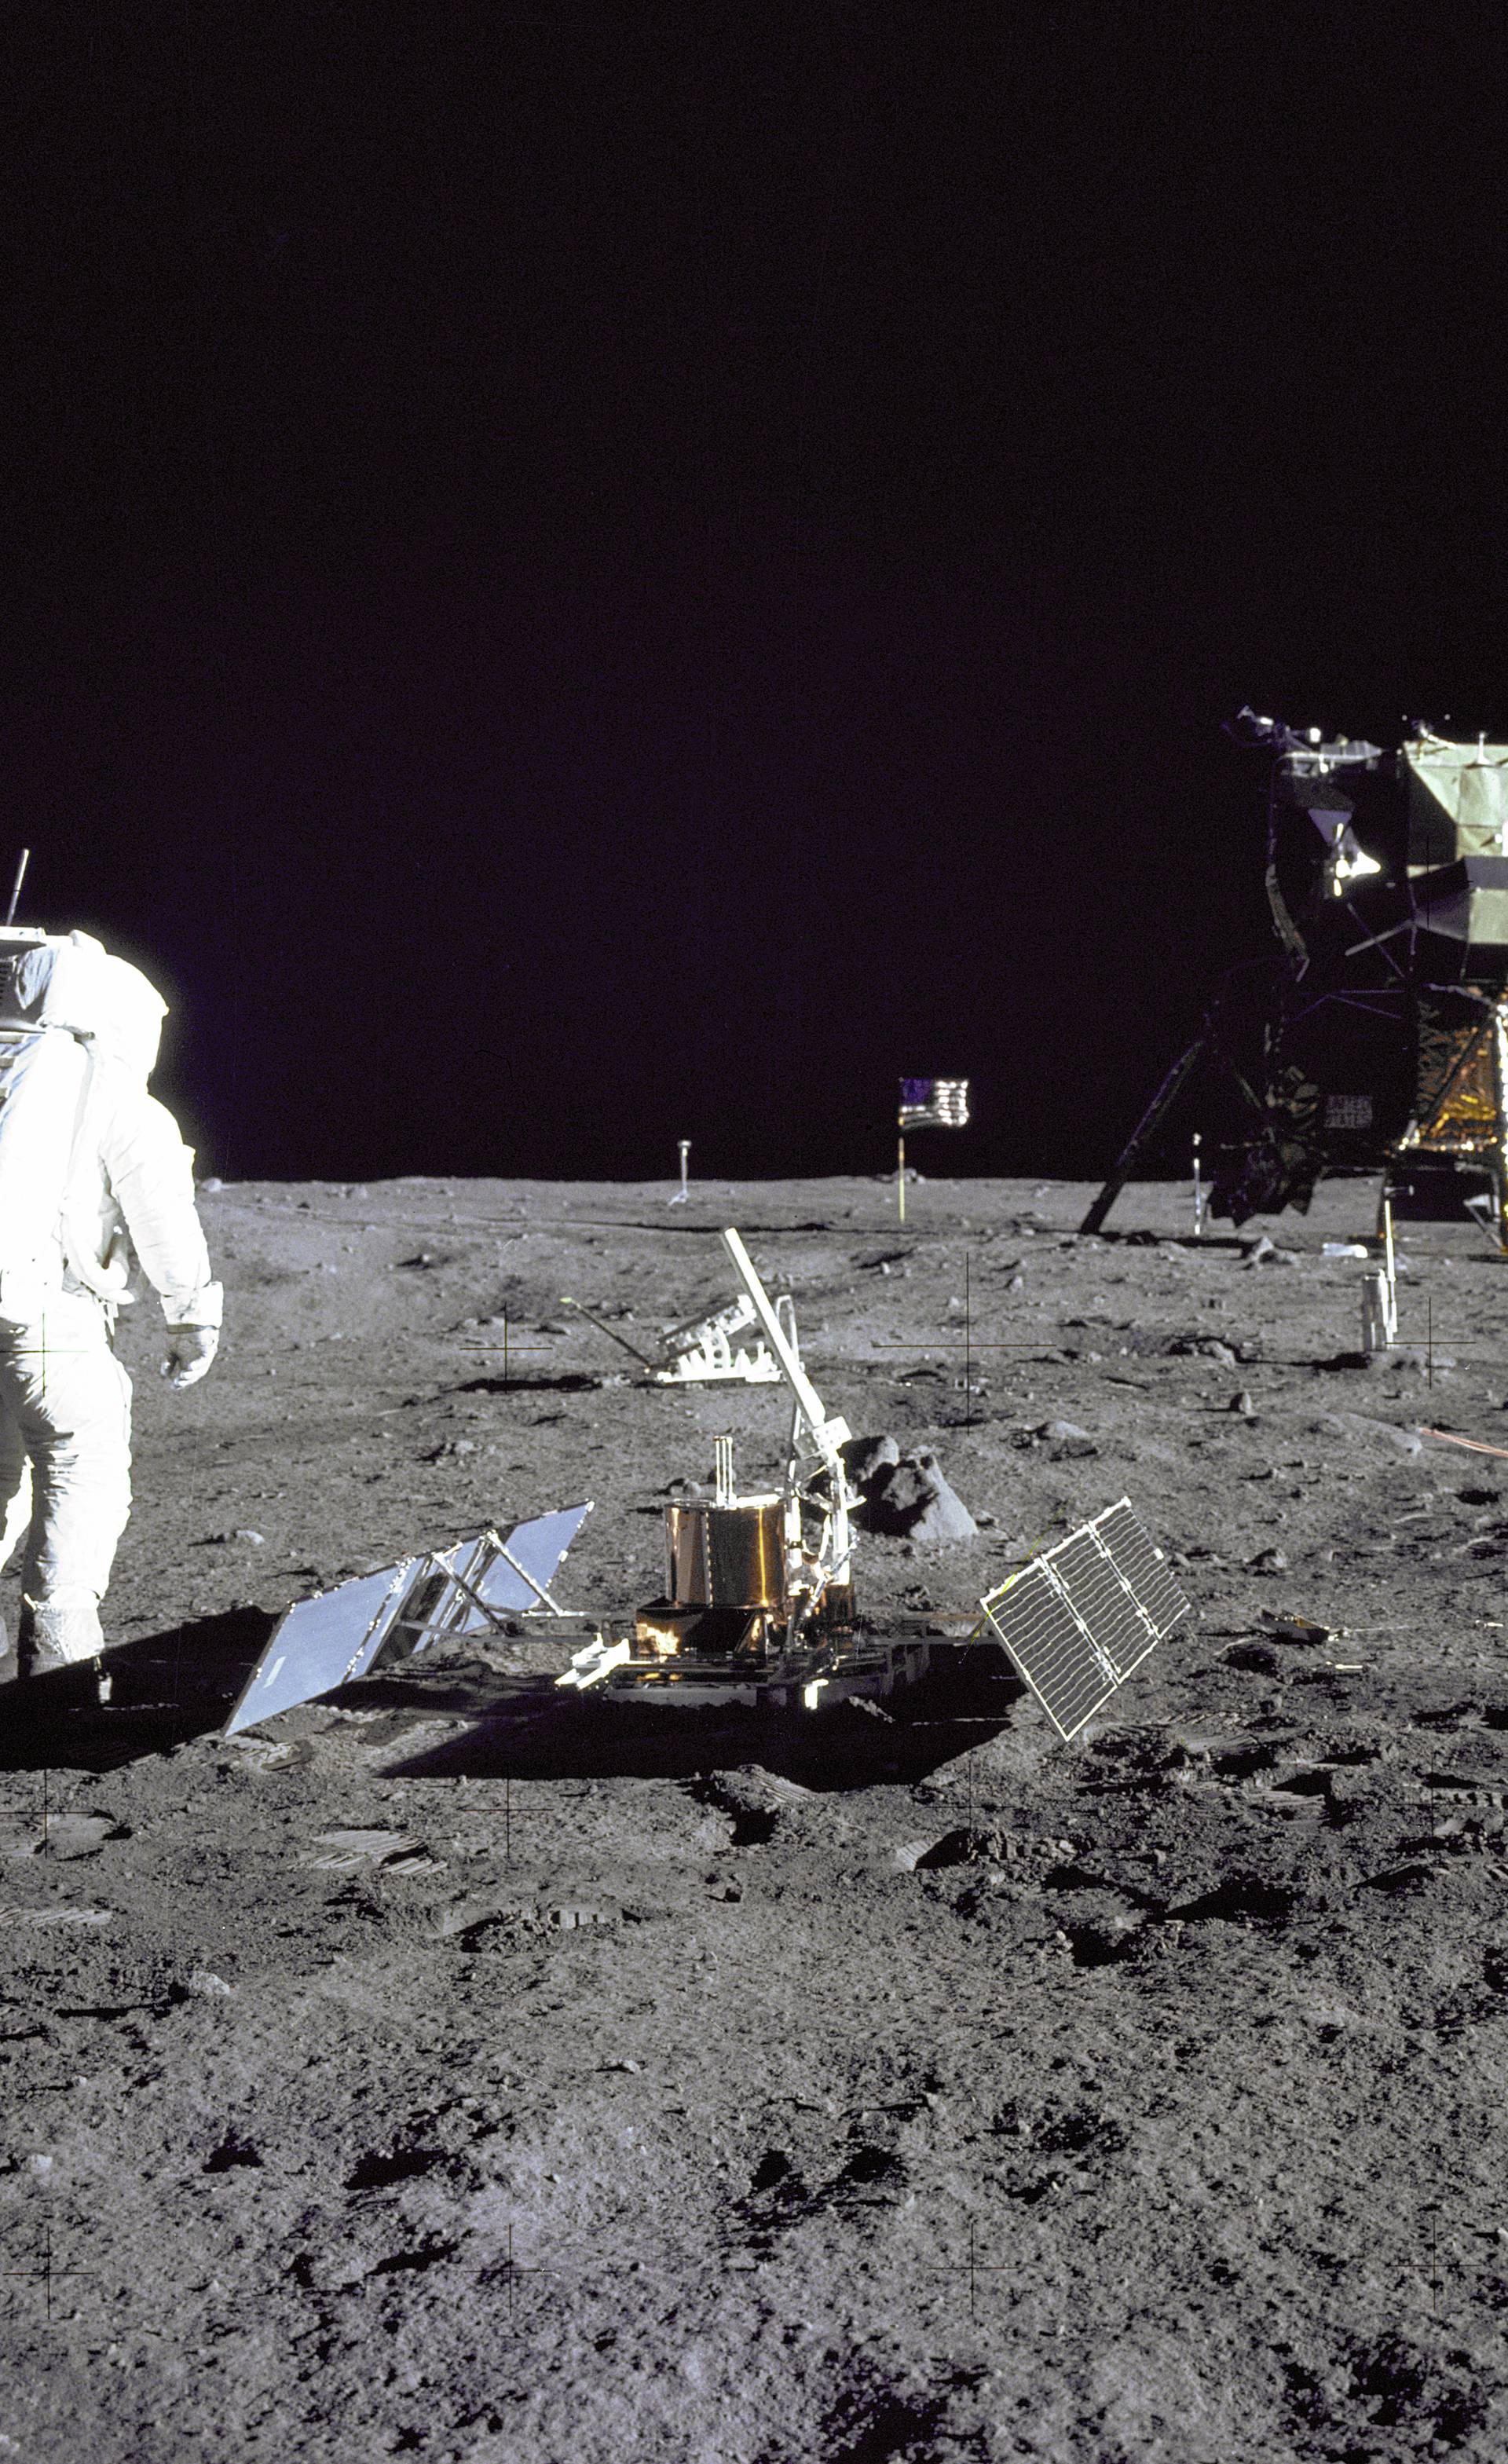 SAD slavi: Apollo 11 lansirali su prije 50 godina na Mjesec